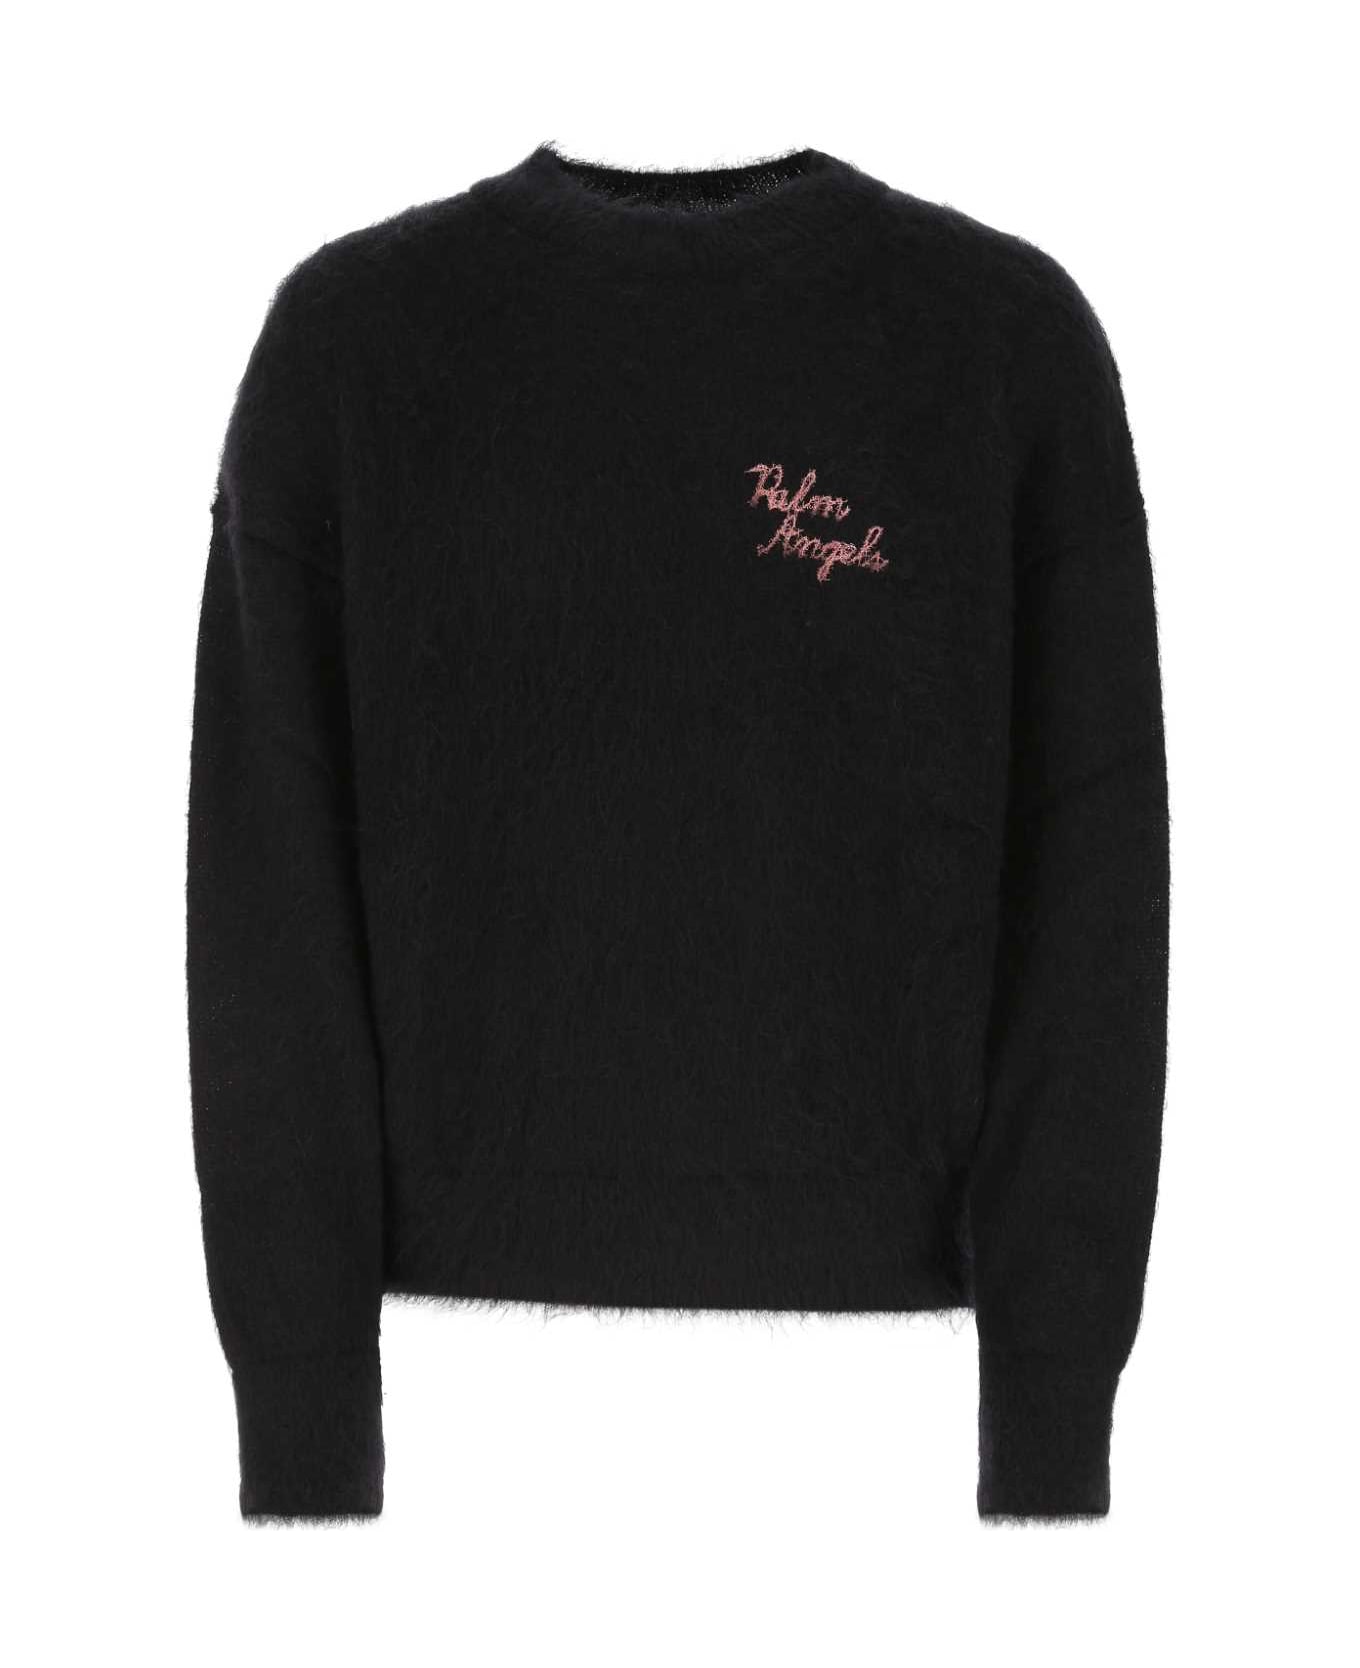 Palm Angels Black Mohair Blend Sweater - 1032 ニットウェア